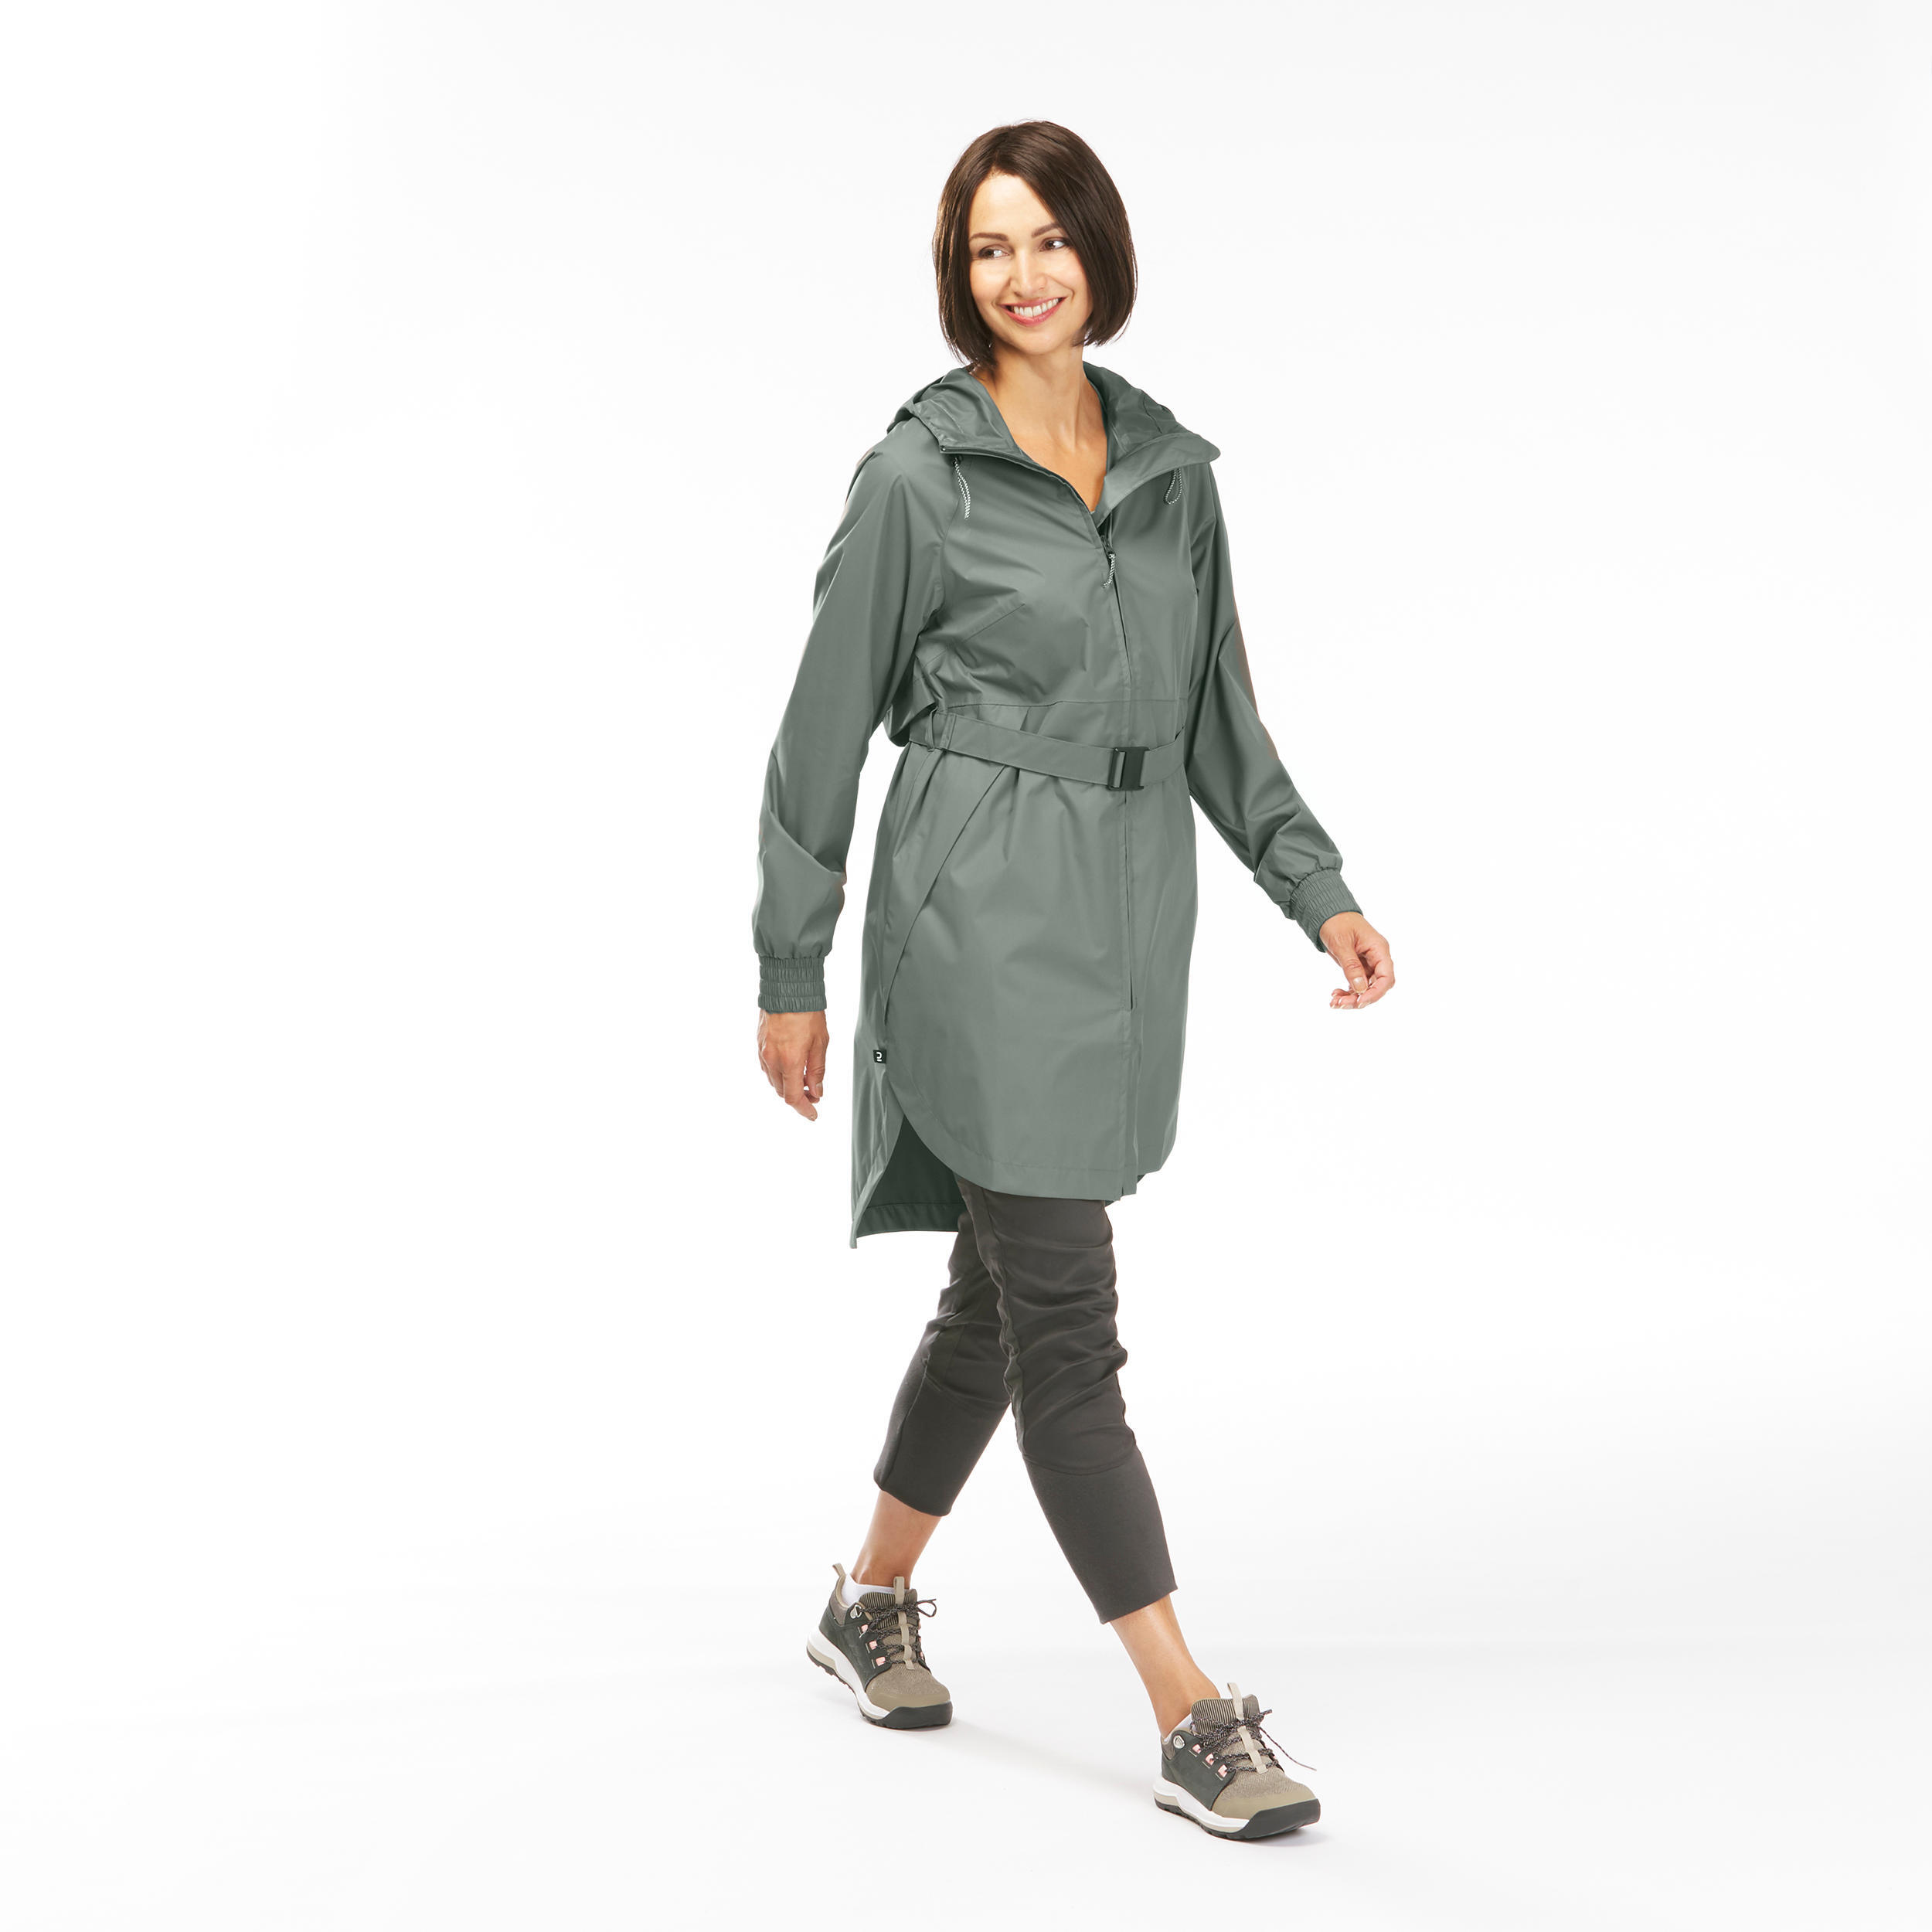 Women's Long Waterproof Hiking Jacket - Raincut Long 7/14